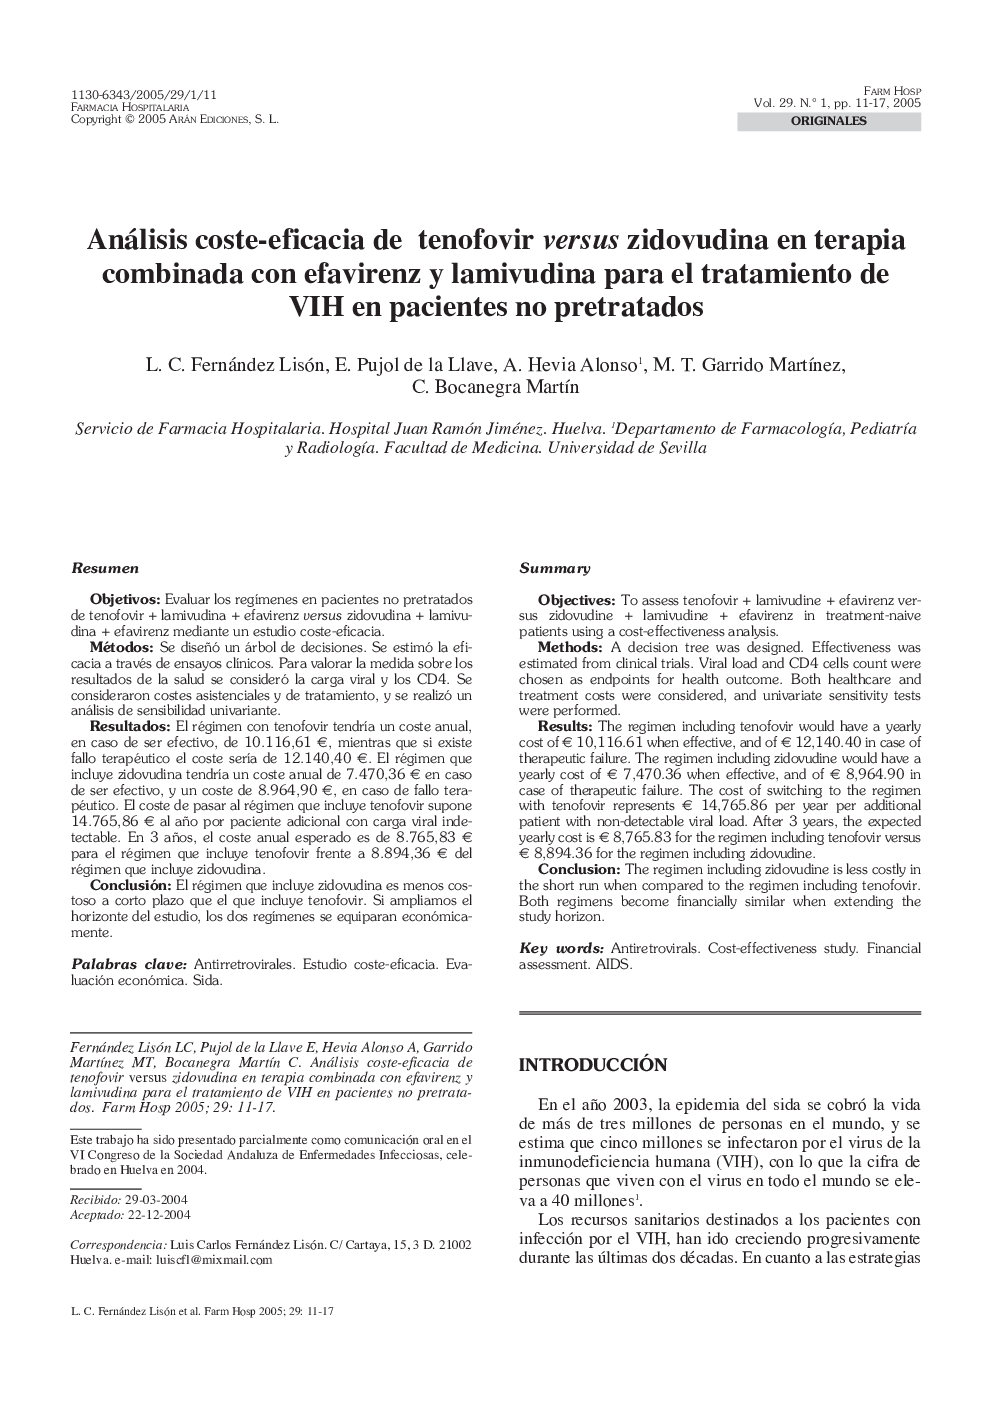 Análisis coste-eficacia de tenofovir versus zidovudina en terapia combinada con efavirenz y lamivudina para el tratamiento de VIH en pacientes no pretratados